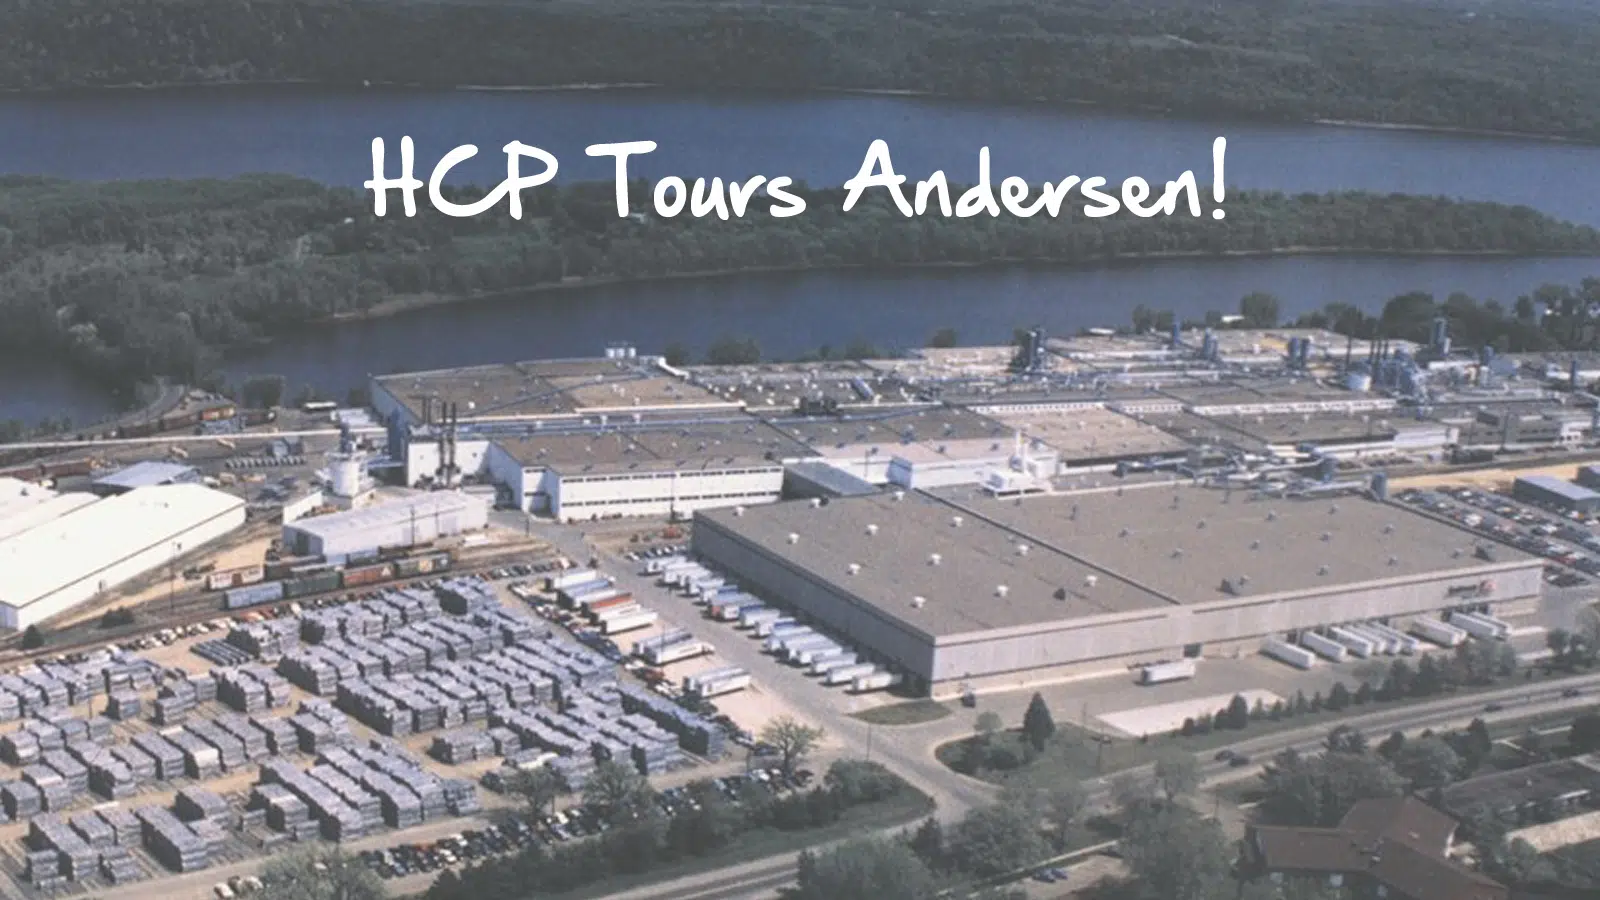 HCP Tours Andersen Windows & Doors!